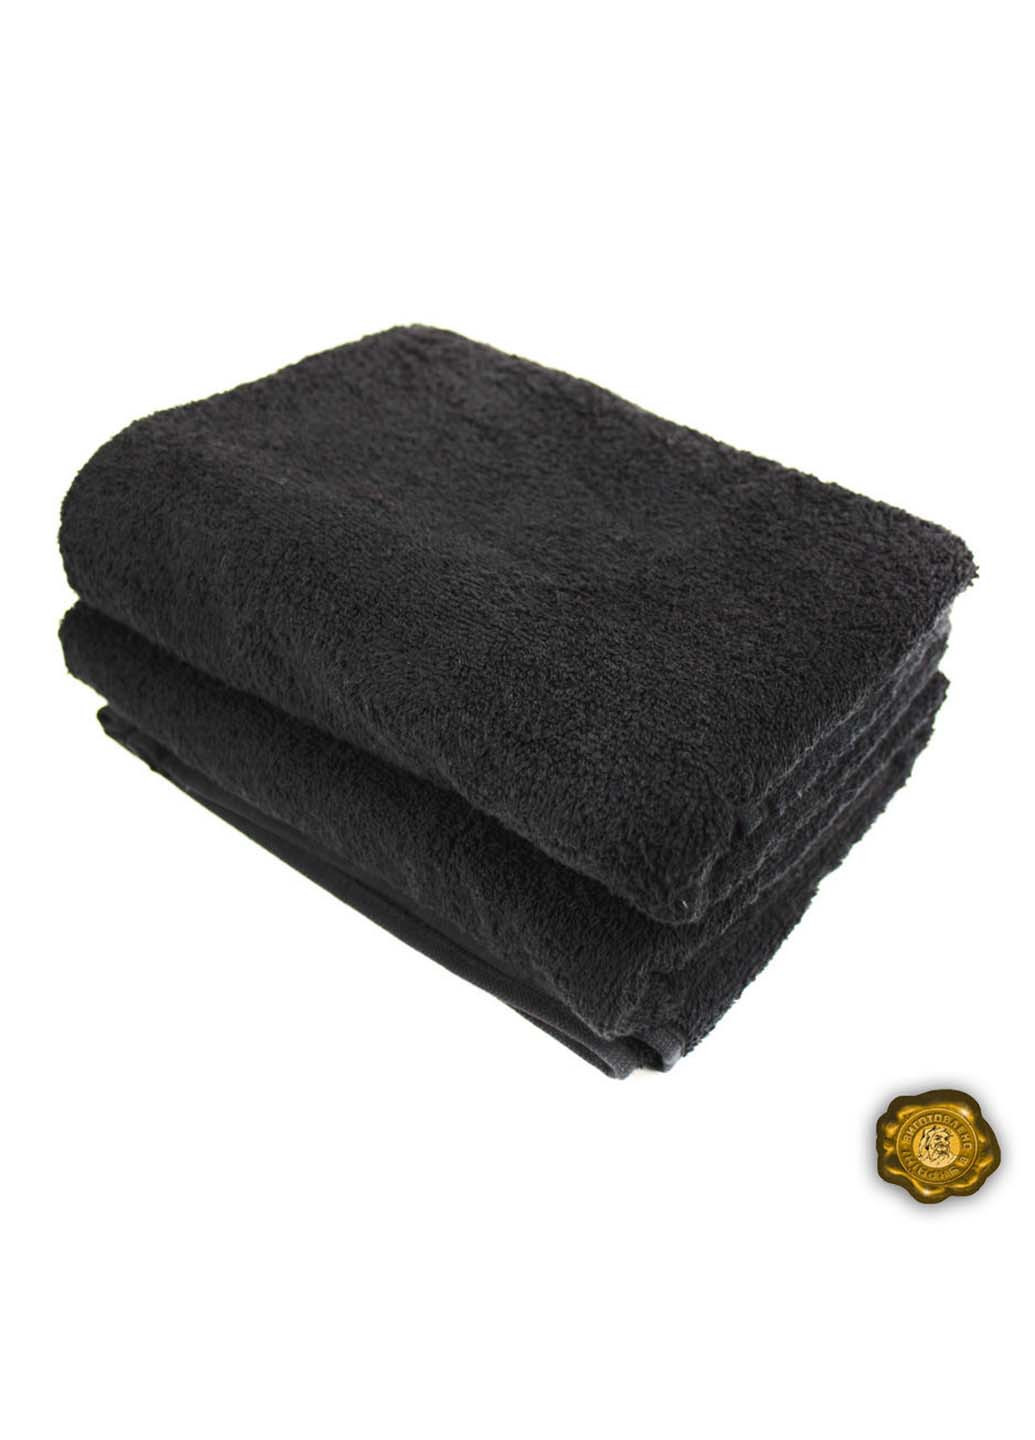 Еней-Плюс полотенце махровое бс0002 40х70 черный производство - Украина